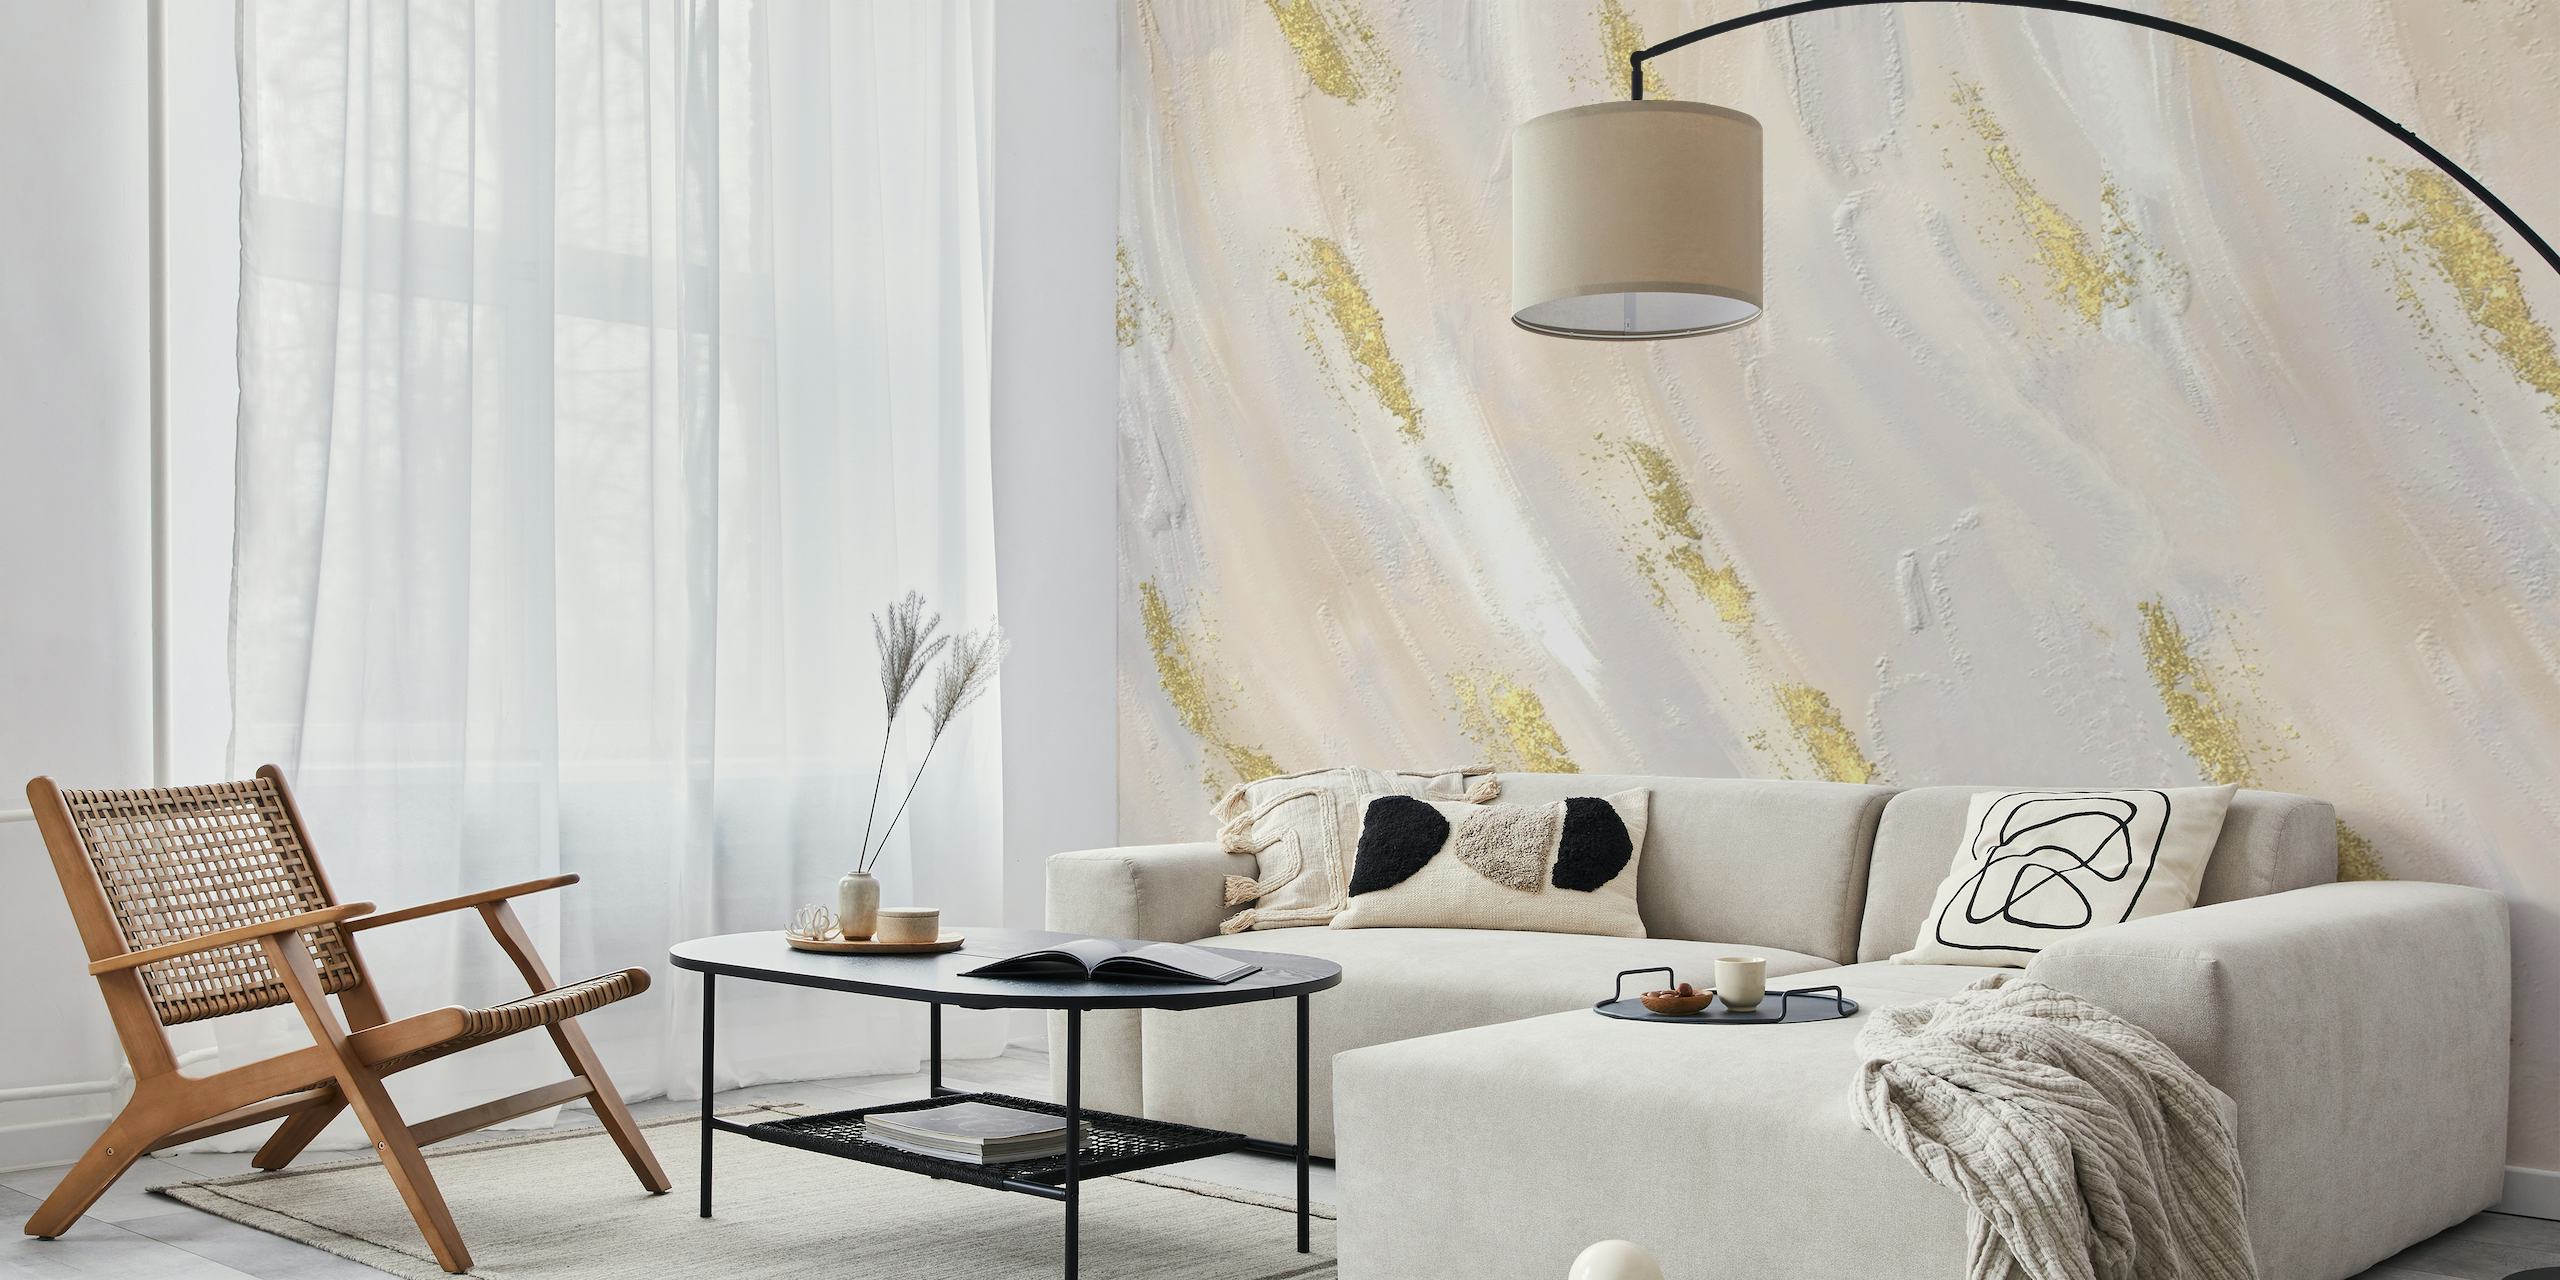 Abstract neutraal fotobehang met gouden strepen die een vleugje luxe en elegantie toevoegen.